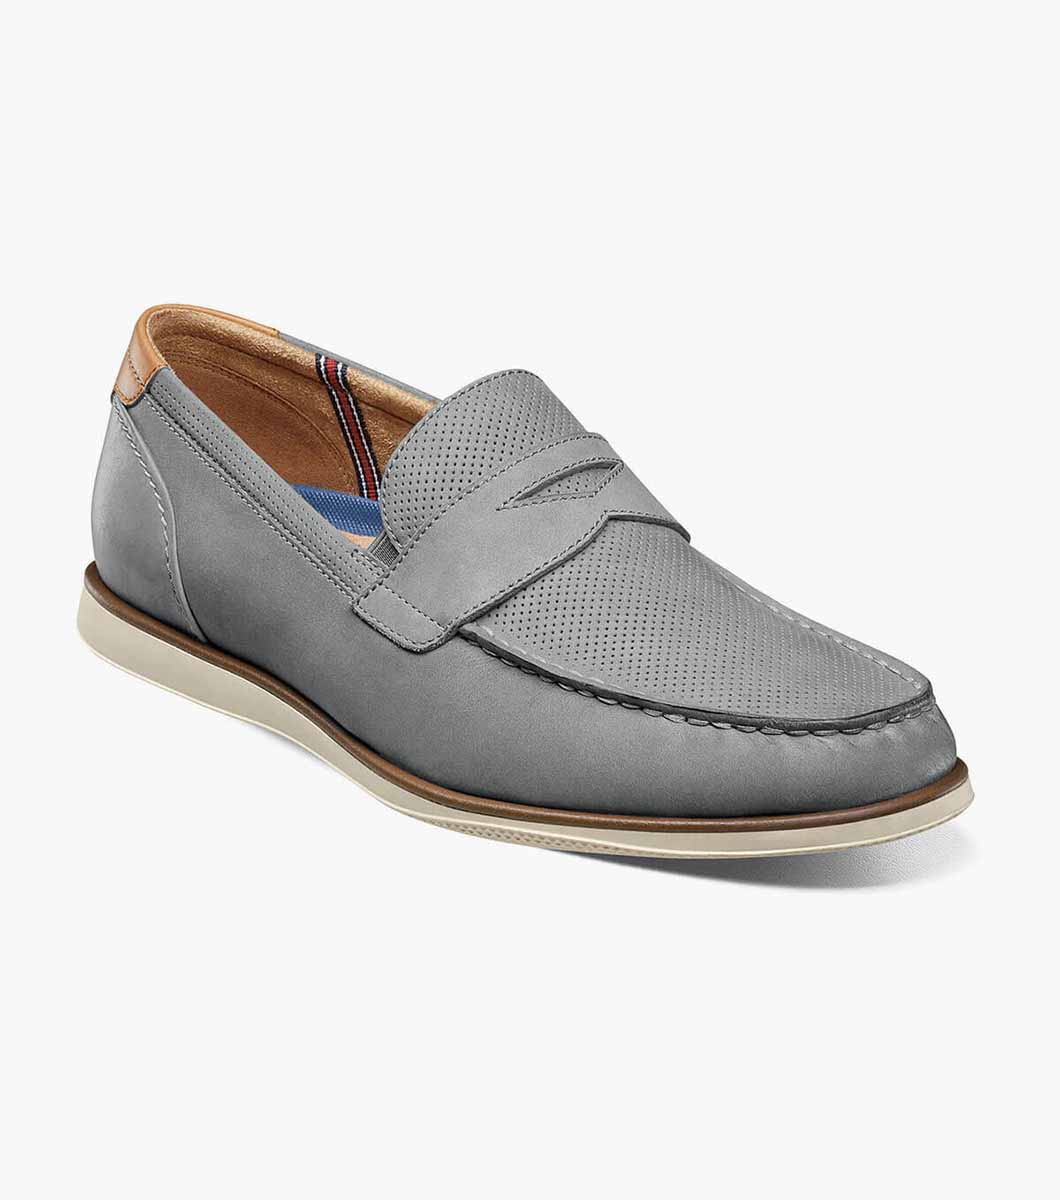 Atlantic Moc Toe Men's Casual Shoes | Florsheim.com